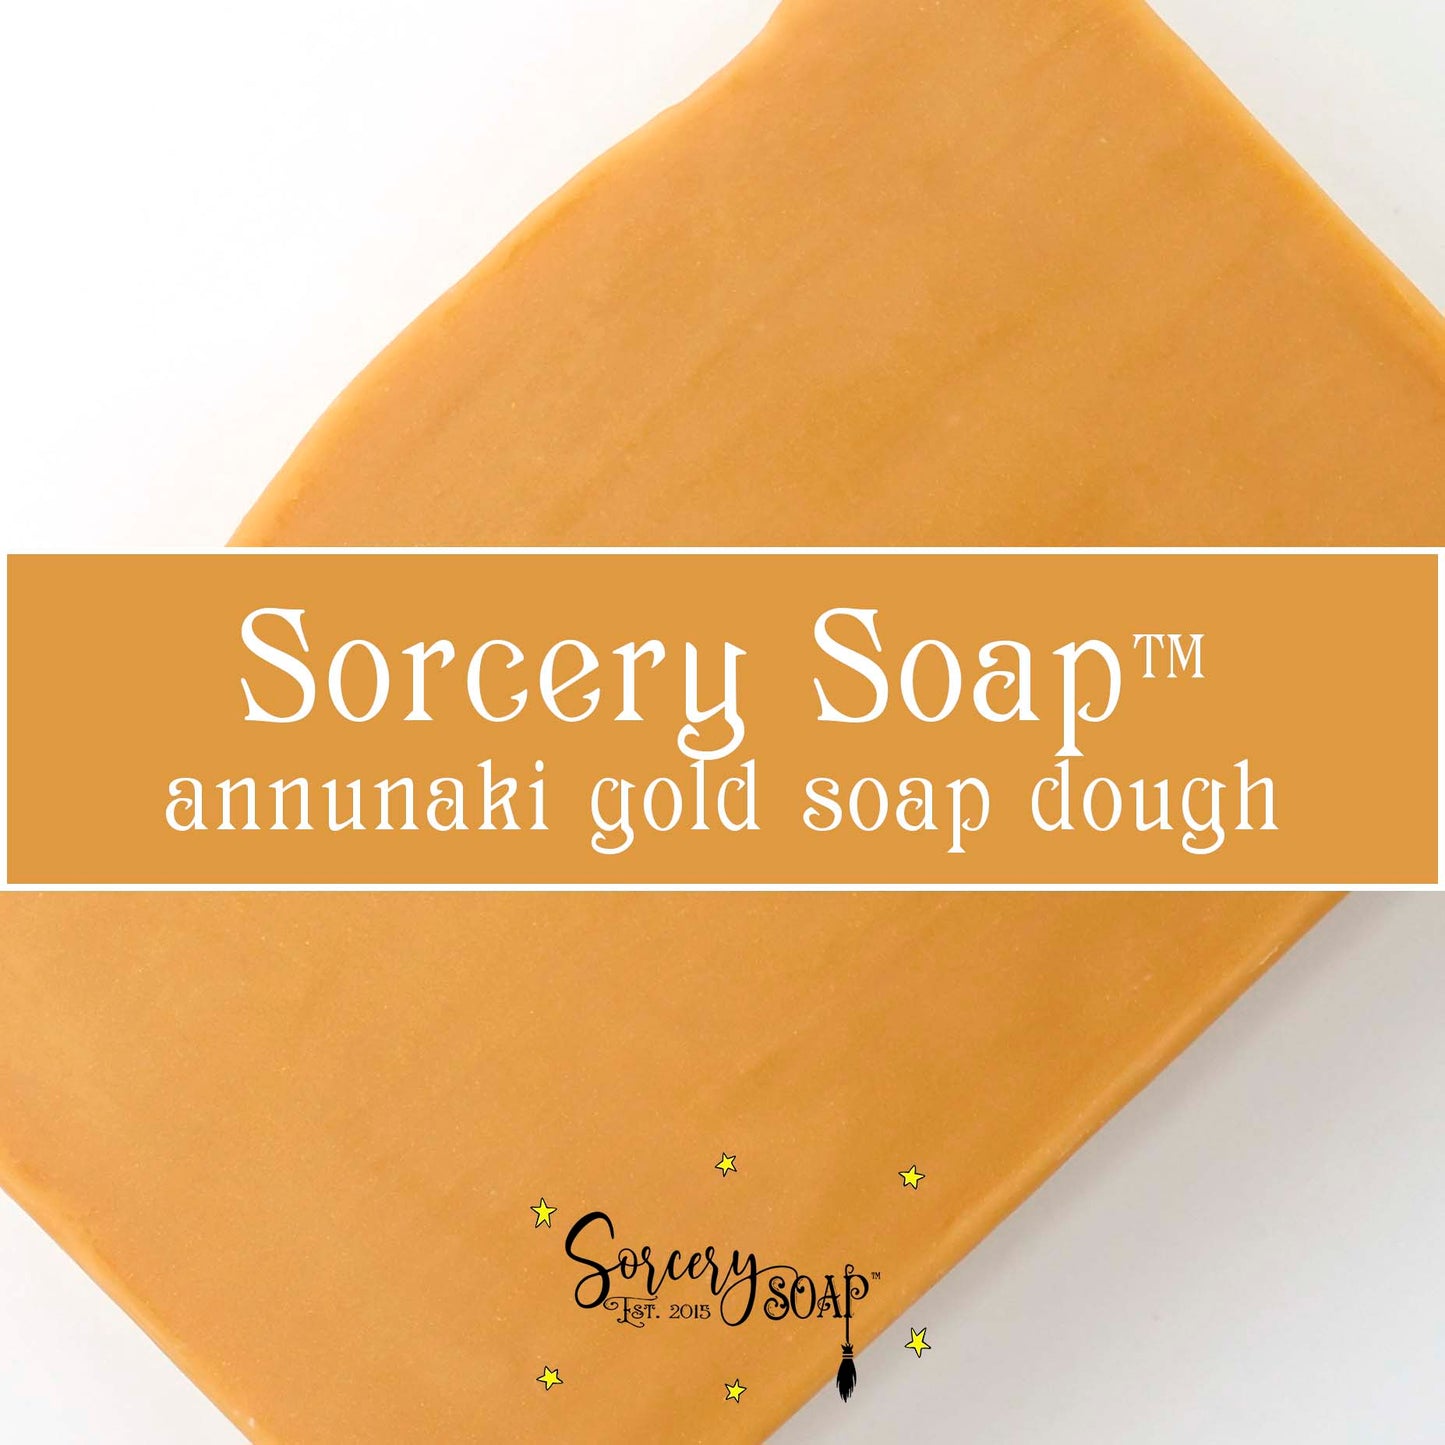 Gold Soap Dough